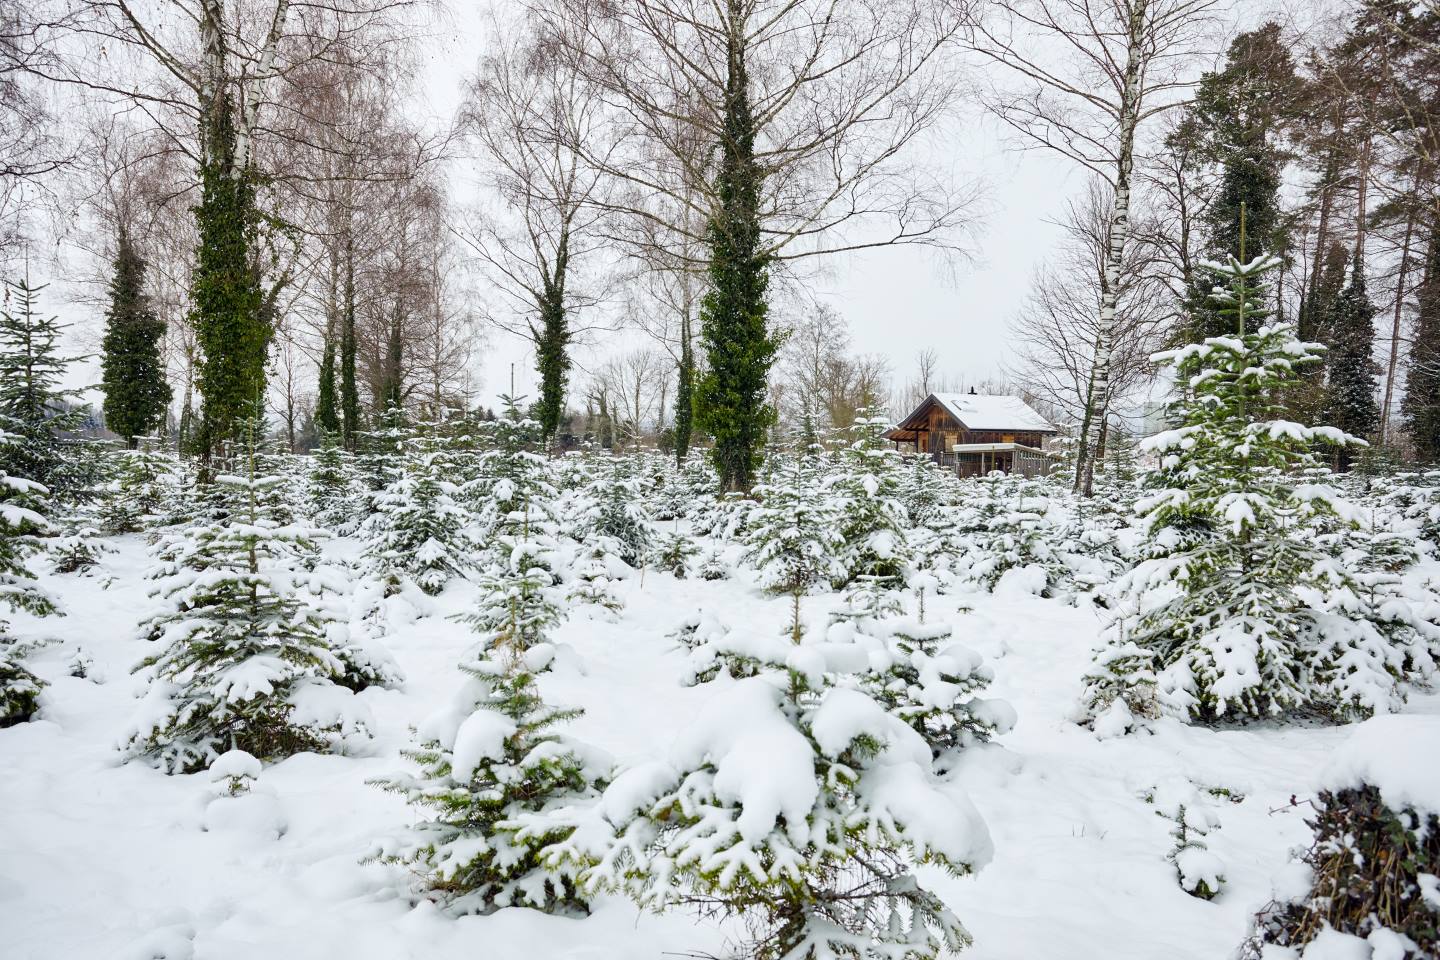 Auf Dem Bild Ist Eine, Mit Schnee Bedeckte Christbaumplantage Zu Sehen